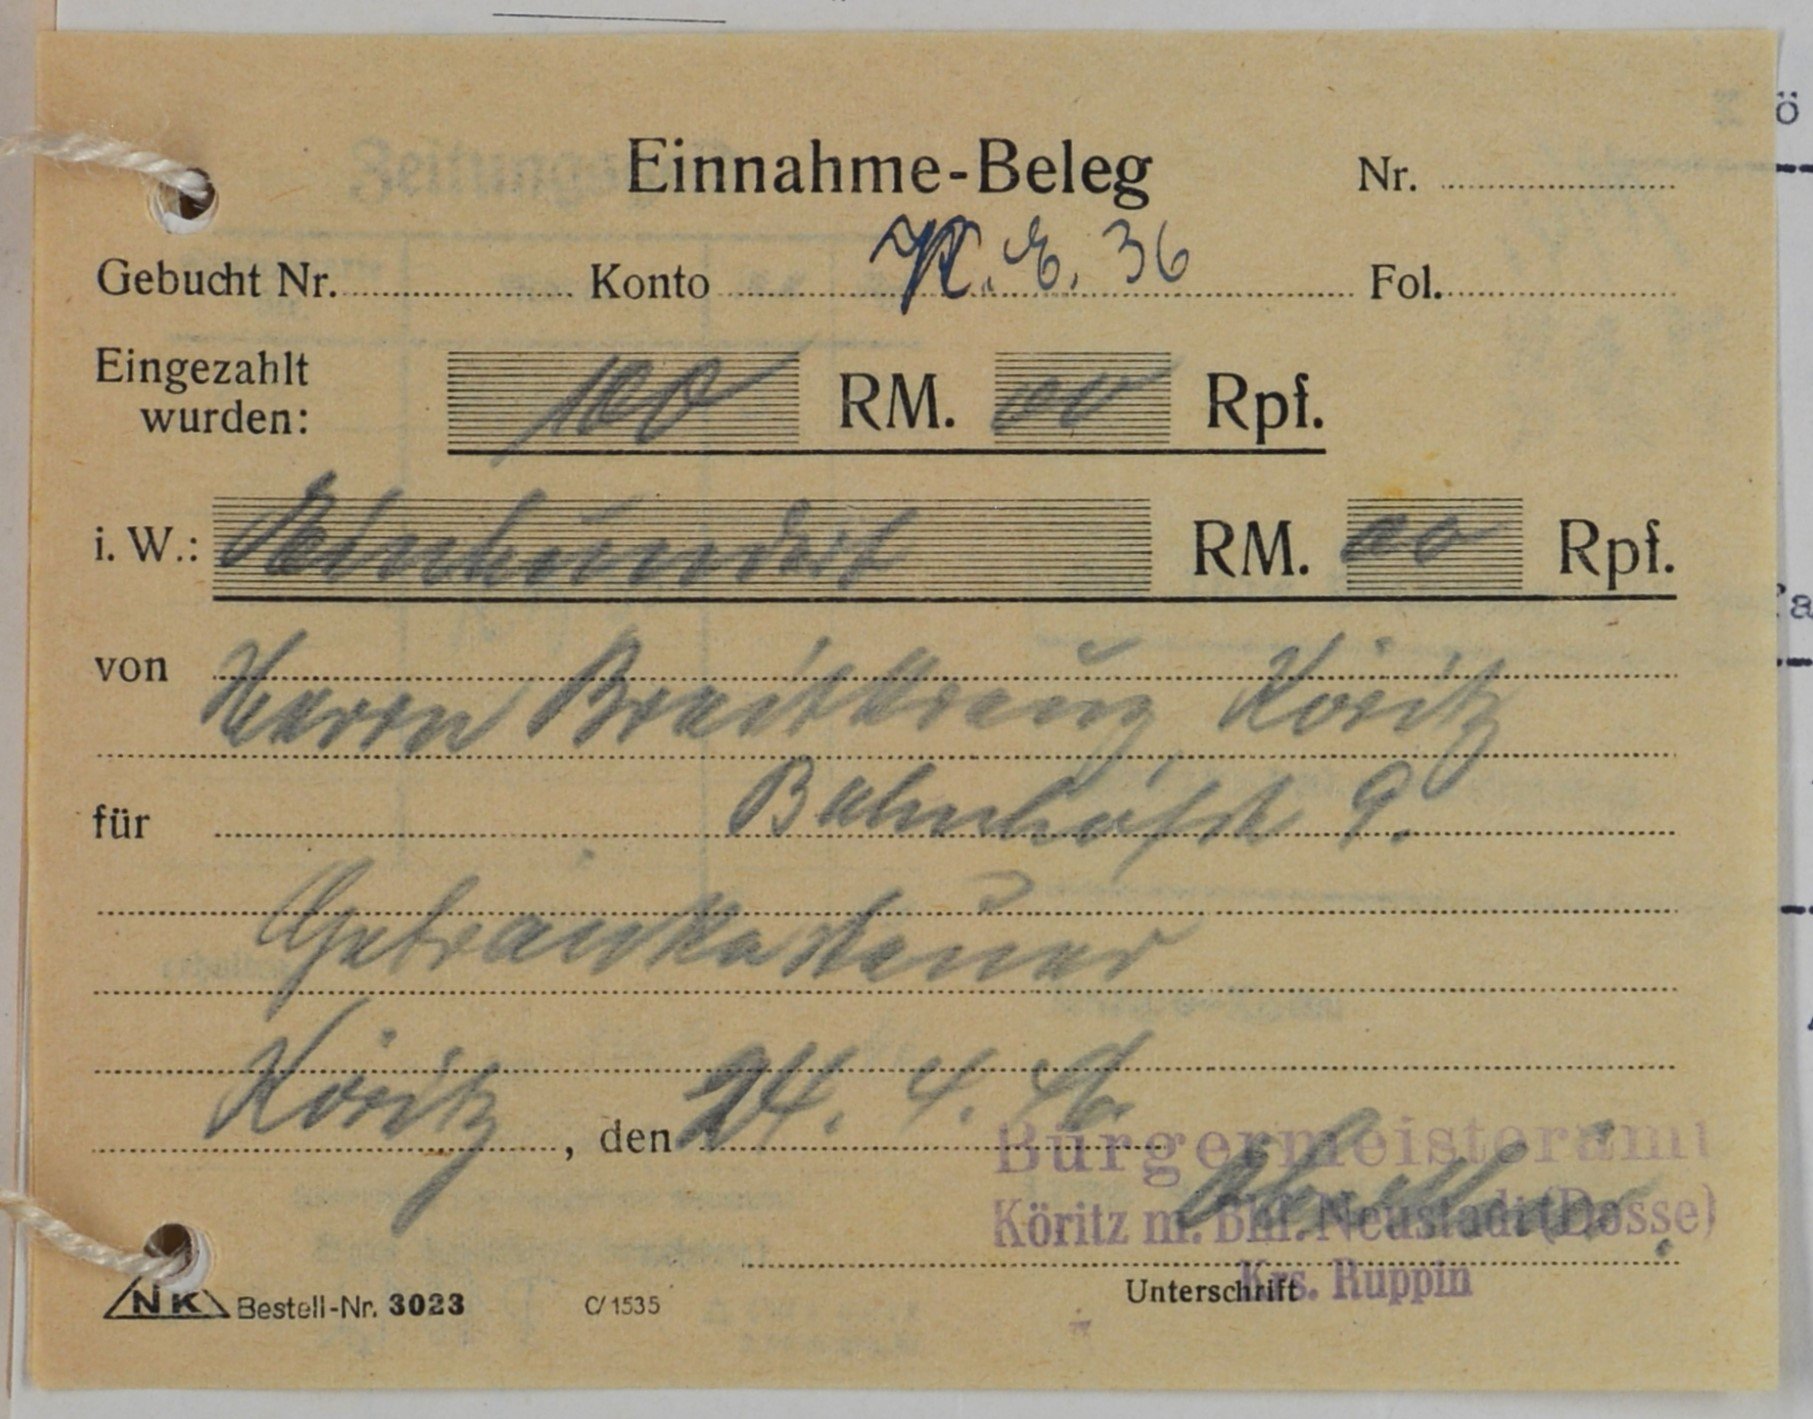 Einnahmebeleg von dem Bürgermeisteramt zu Köritz für Wilhelm Breitkreuz (DDR Geschichtsmuseum im Dokumentationszentrum Perleberg CC BY-SA)